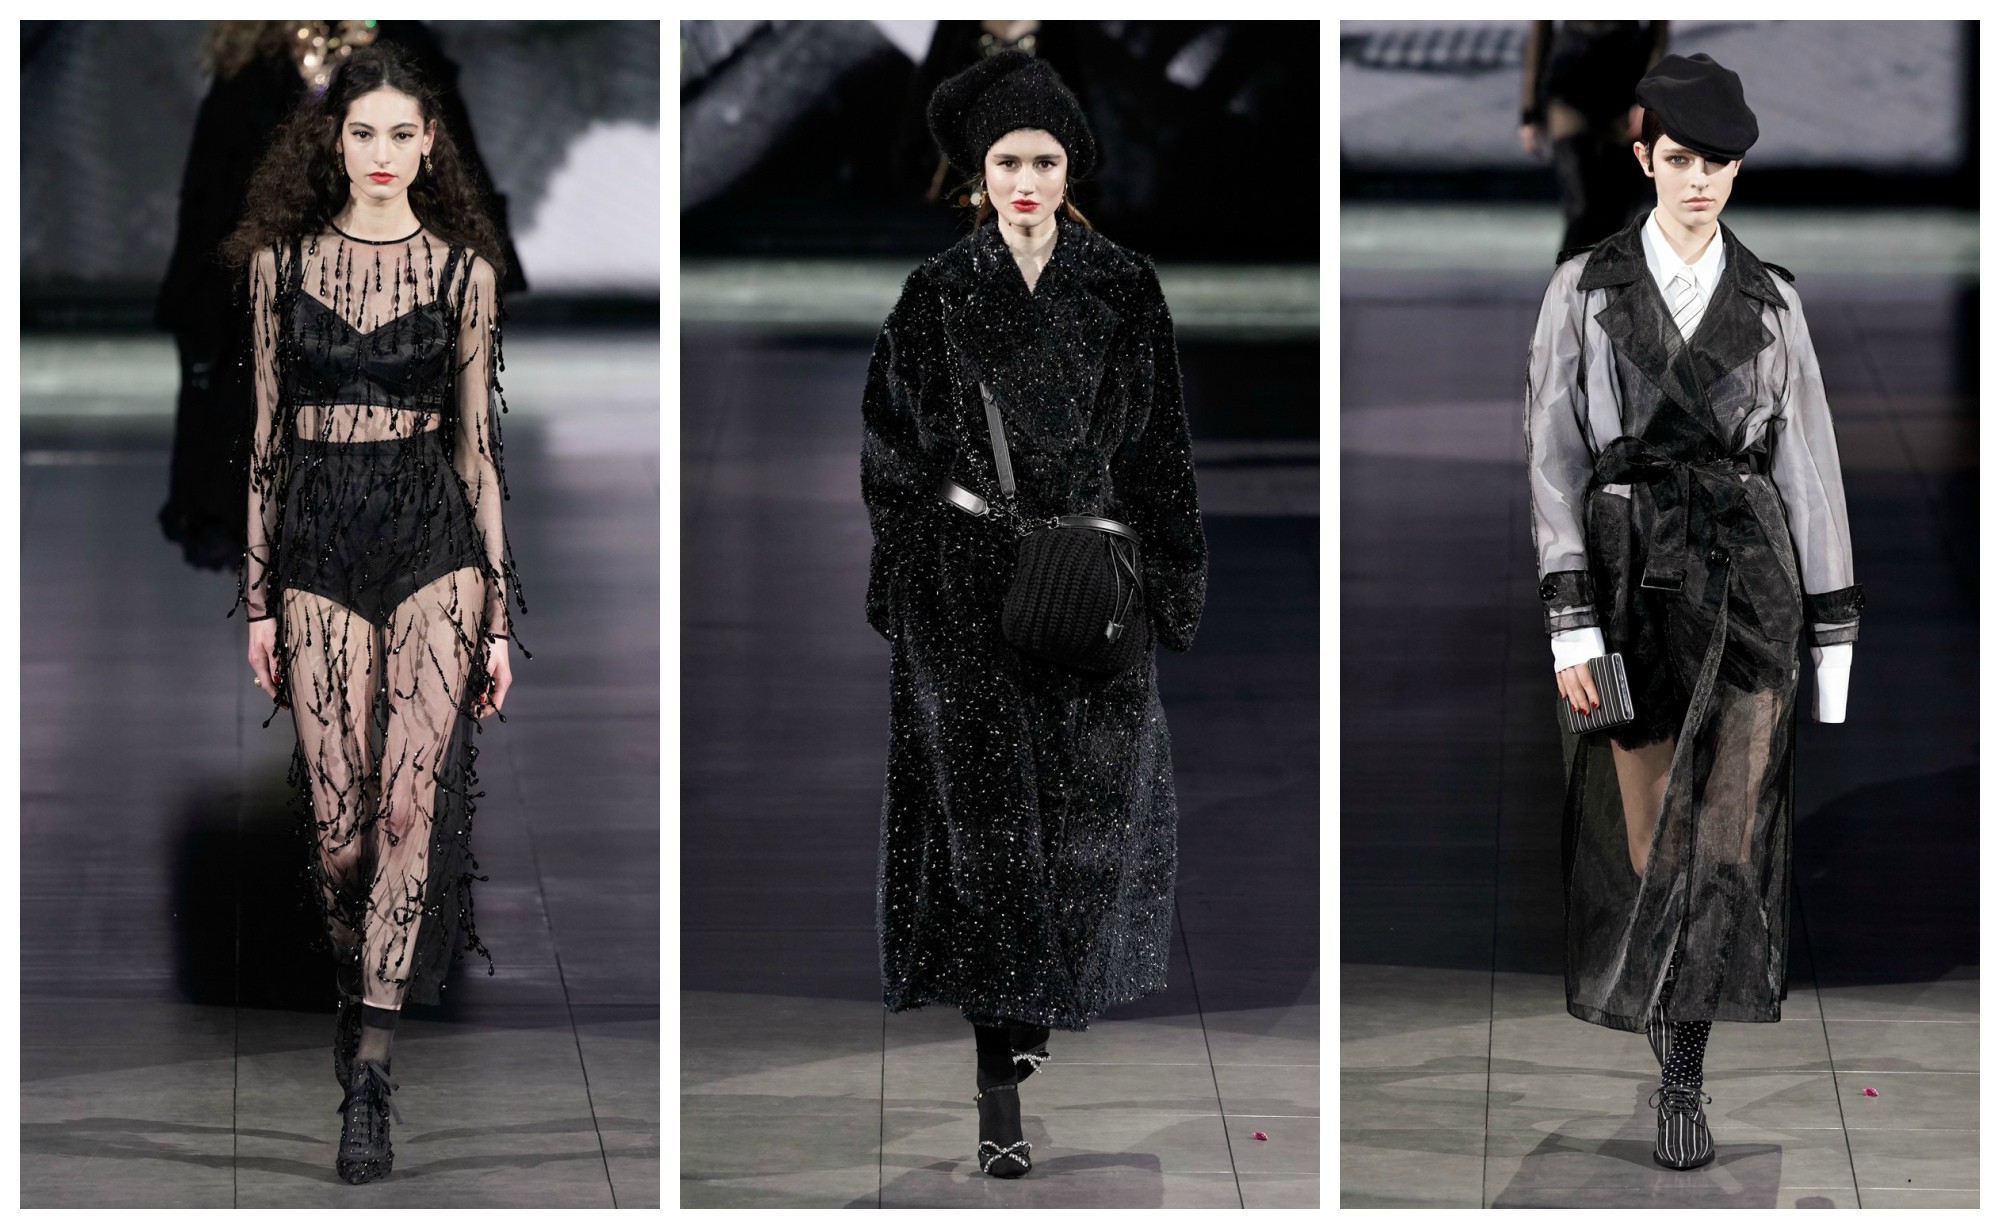 Шубы, прозрачные кружевные платья и береты — Dolce & Gabbana показали новую коллекцию